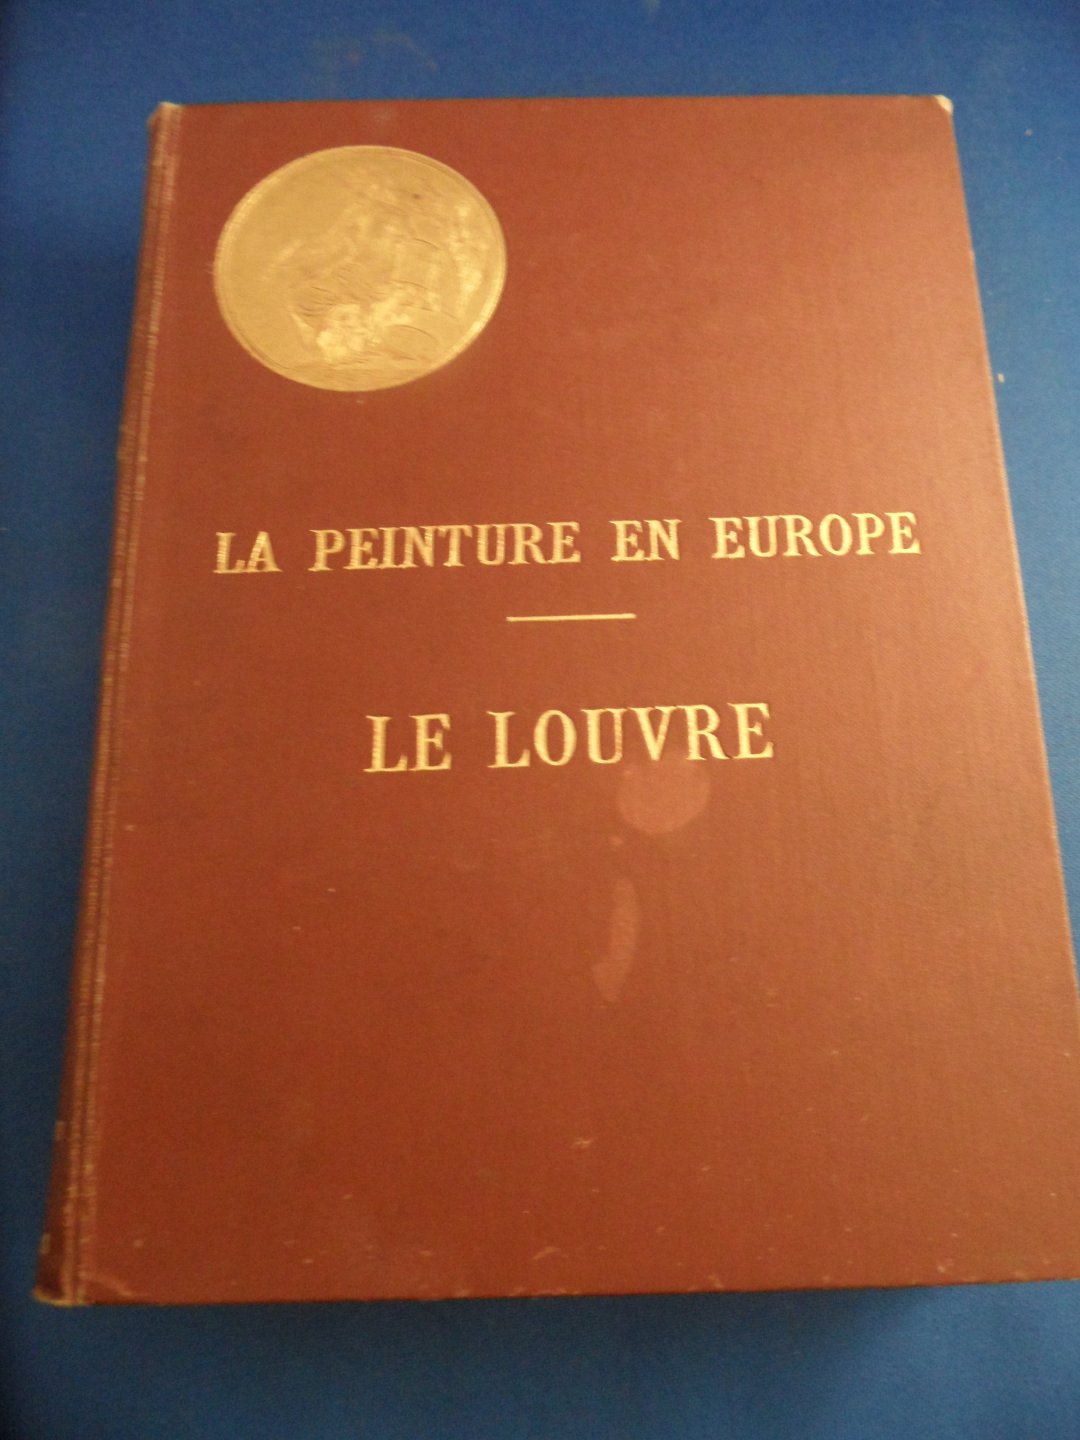 Lafenestre, Georges - La peinture en europe - Le Louvre